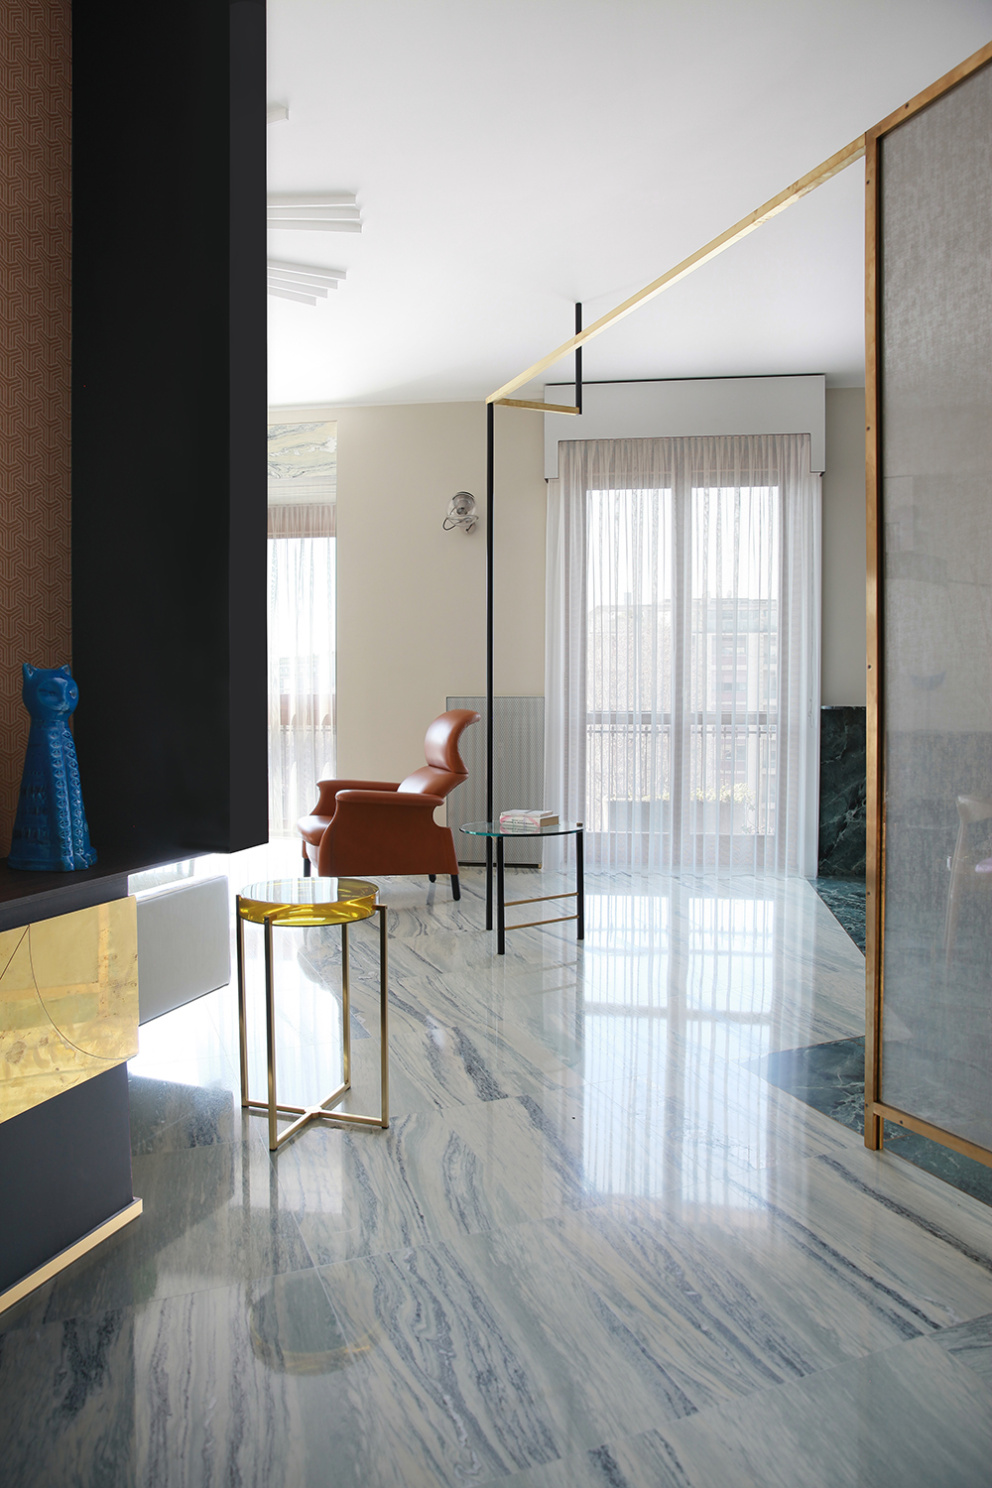 Milánský byt si odvážně pohrává s různorodými materiály, barvami a neotřelým designem.  